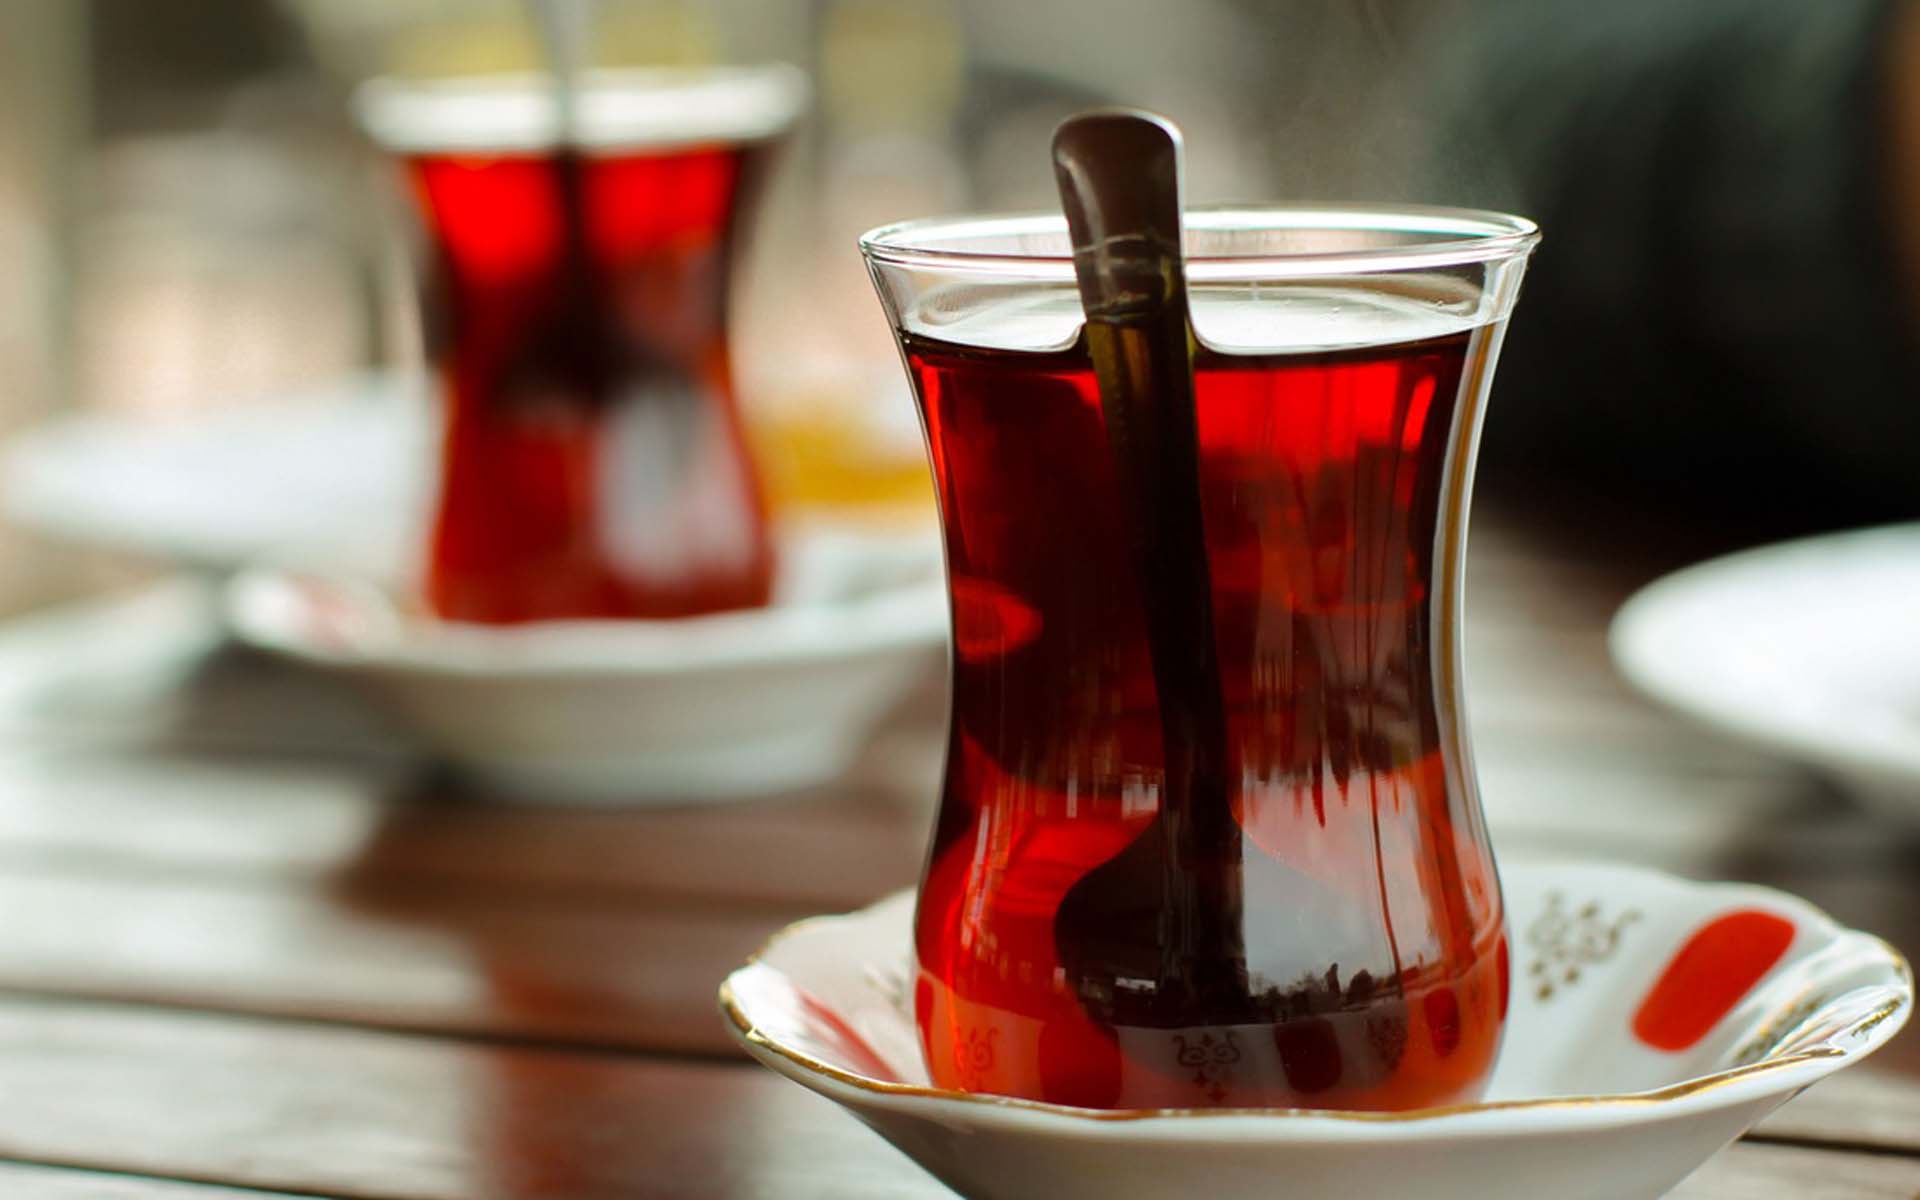 Sudan sonra en son tüketilen çay kansere yol açıyor!